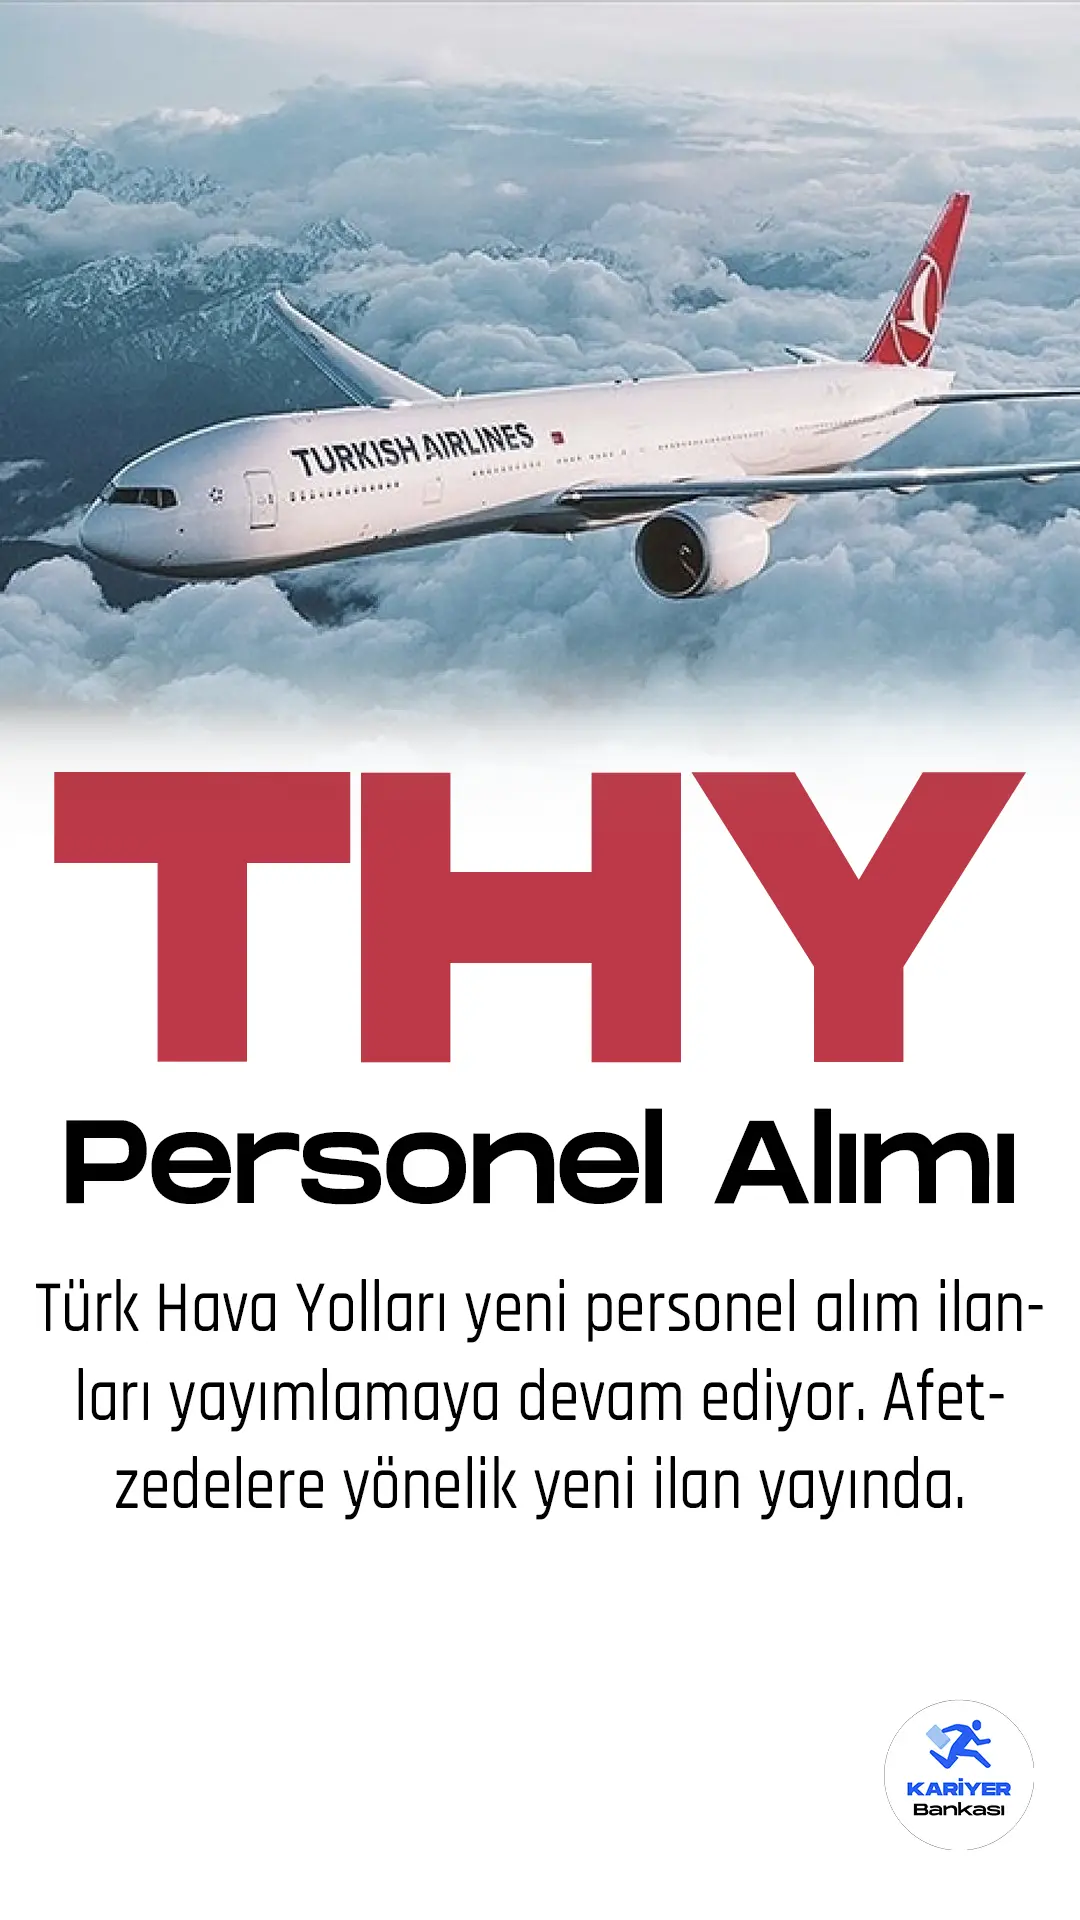 Türk hava yolları yeni personel alımları yapacak.